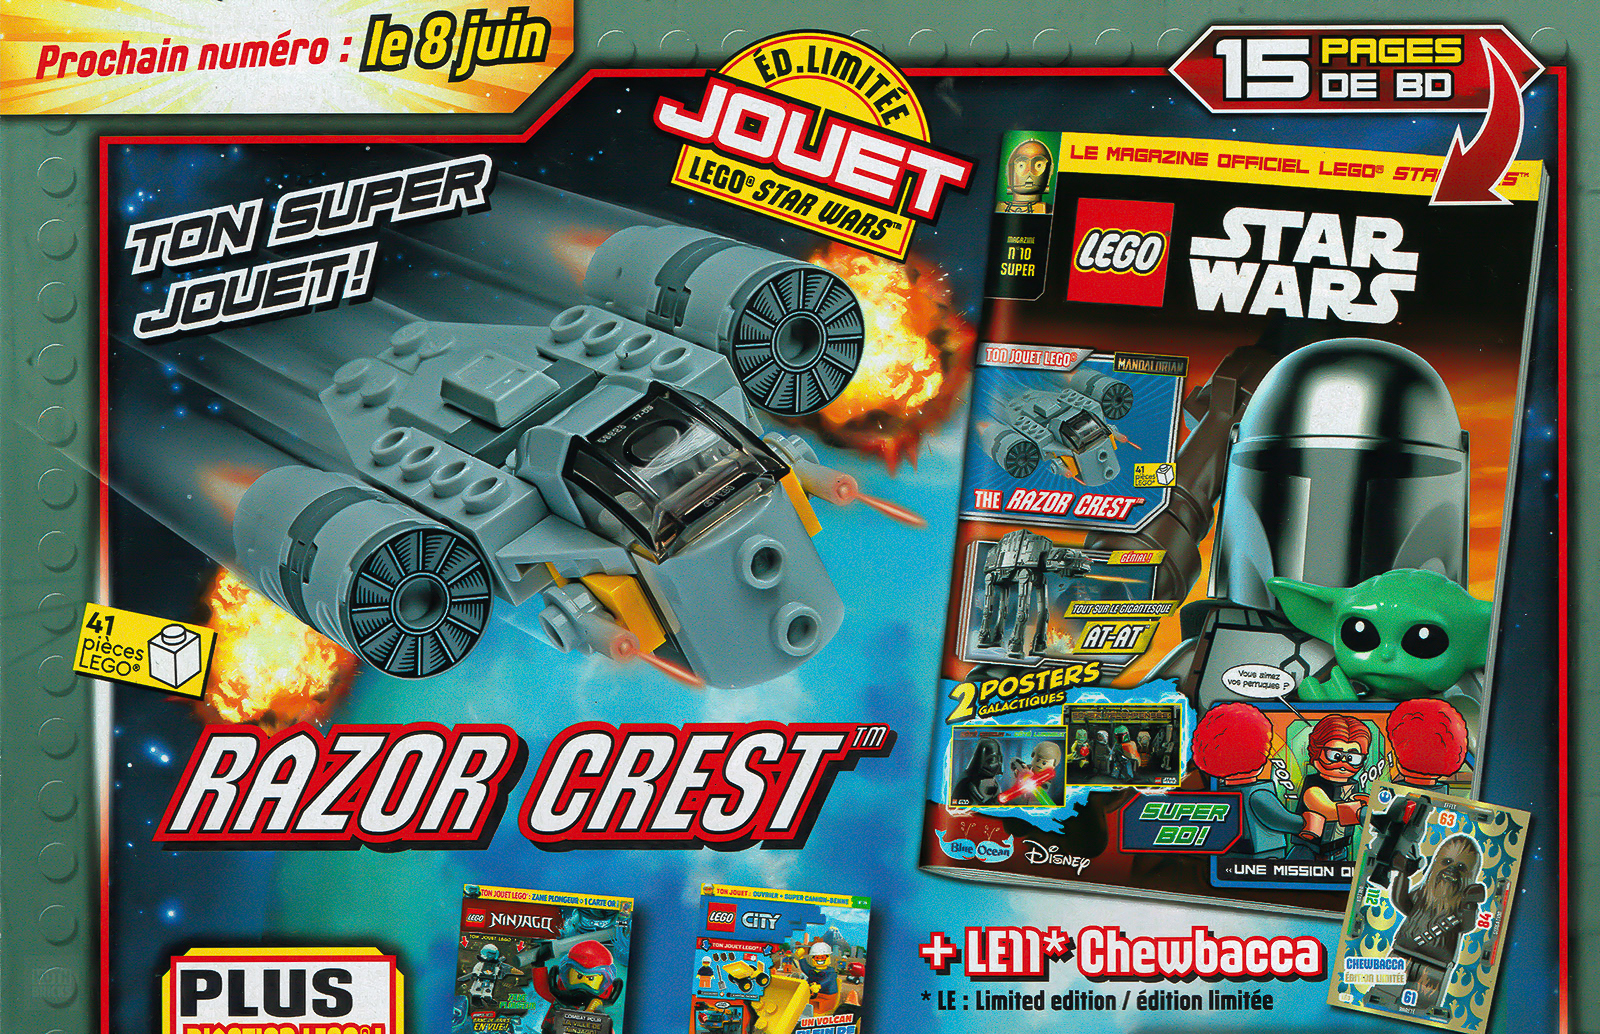 Trên sạp báo: Số tháng 2022 năm XNUMX của Tạp chí LEGO Star Wars Chính thức